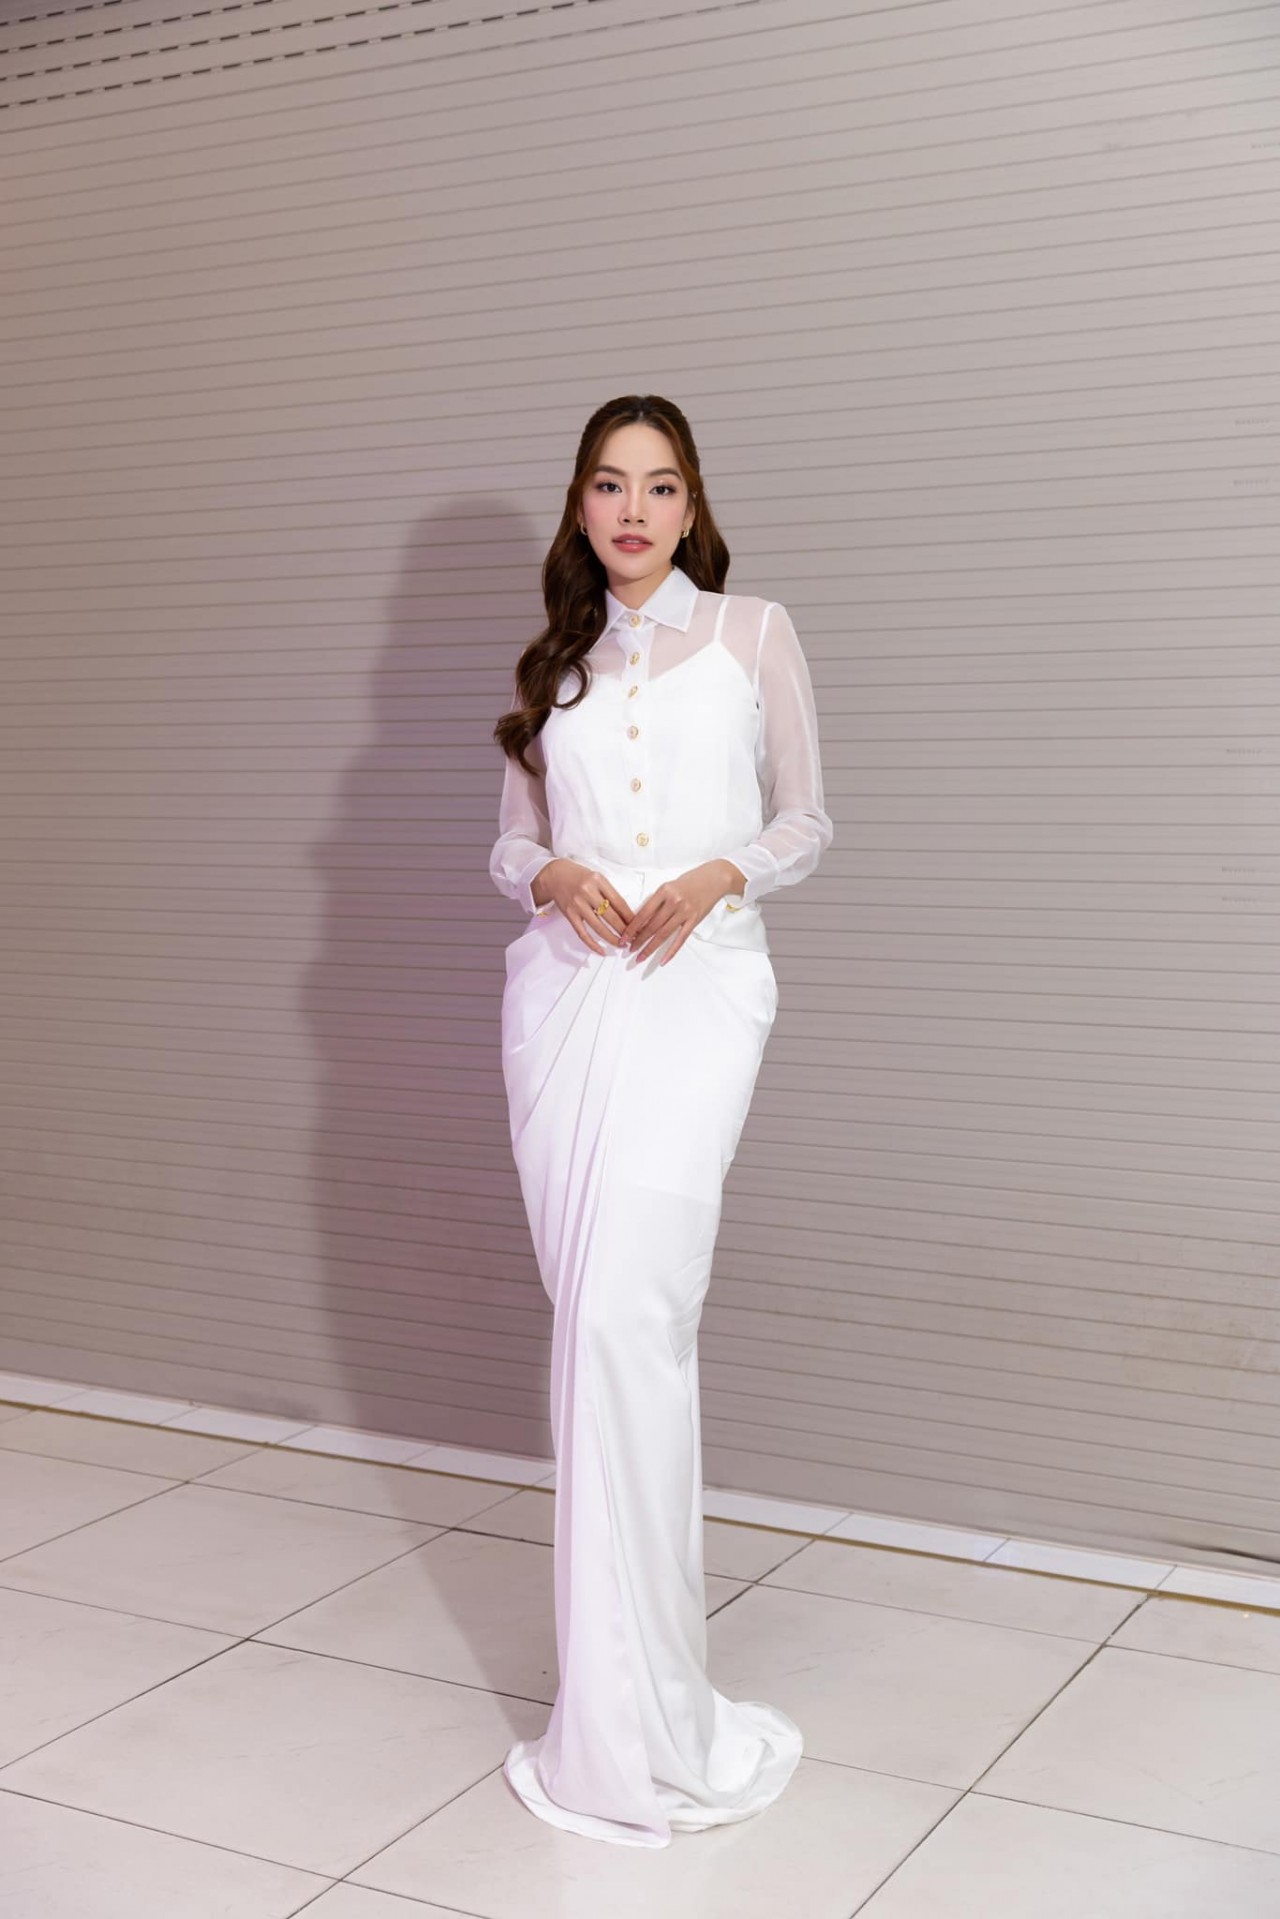 Hoa hậu Lê Hoàng Phương đăng ảnh nóng bỏng